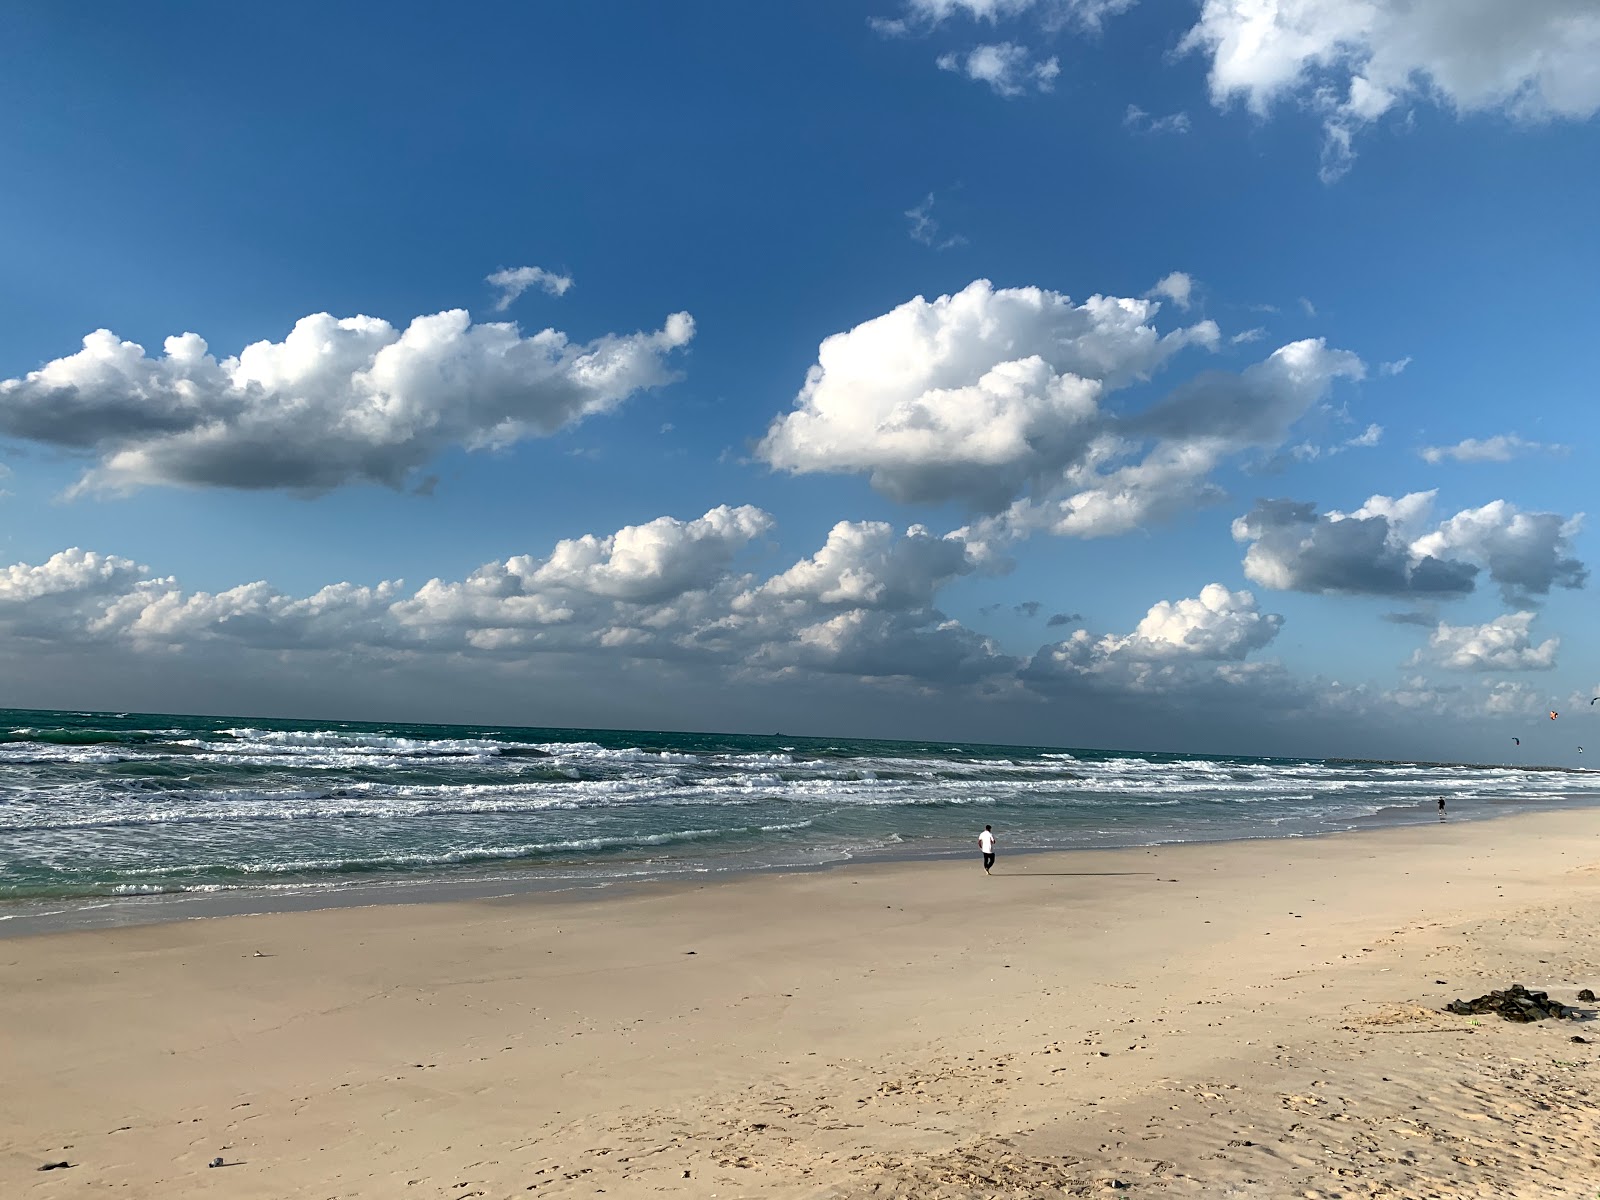 Umm Al Quwain'in fotoğrafı geniş plaj ile birlikte